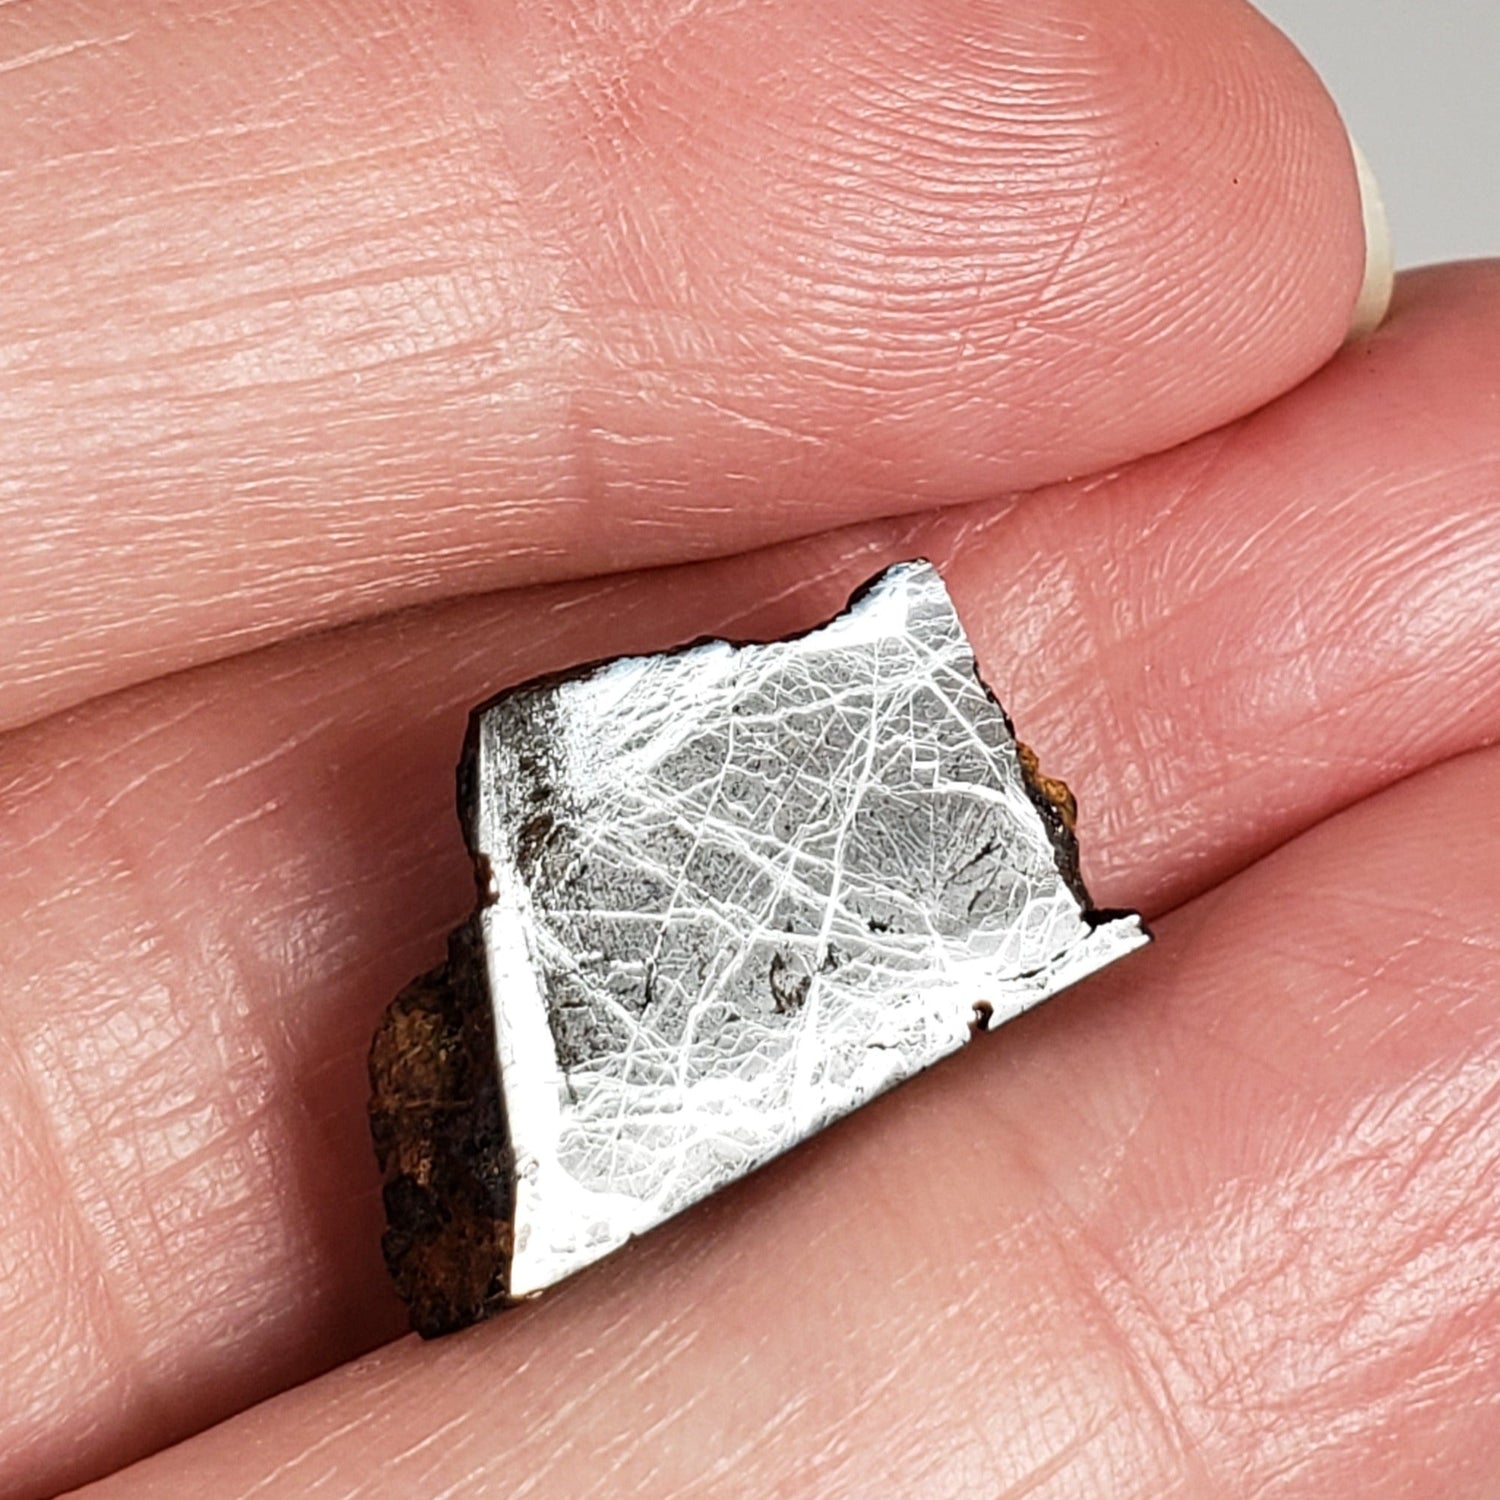 Huckitta Meteorite | 2.84 Grams | Part End Cut | Pallasite Stony Iron | Rare | Australia